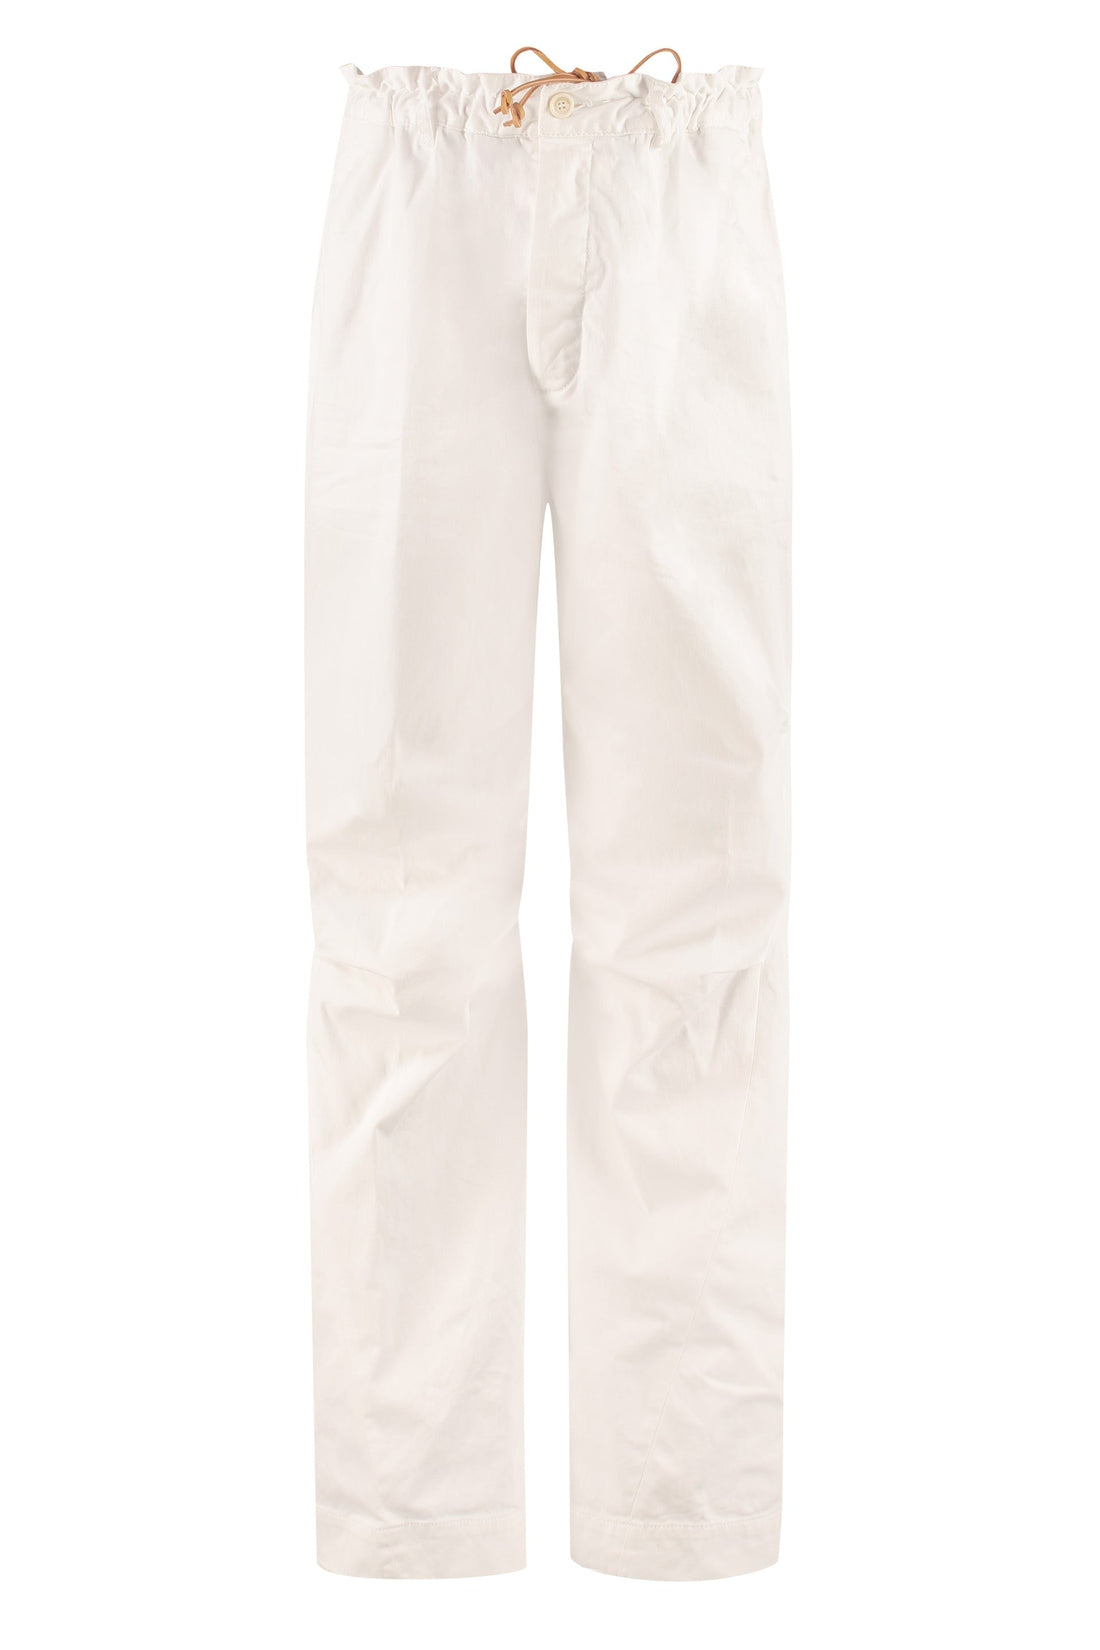 Dsquared2-OUTLET-SALE-High-rise cotton trousers-ARCHIVIST